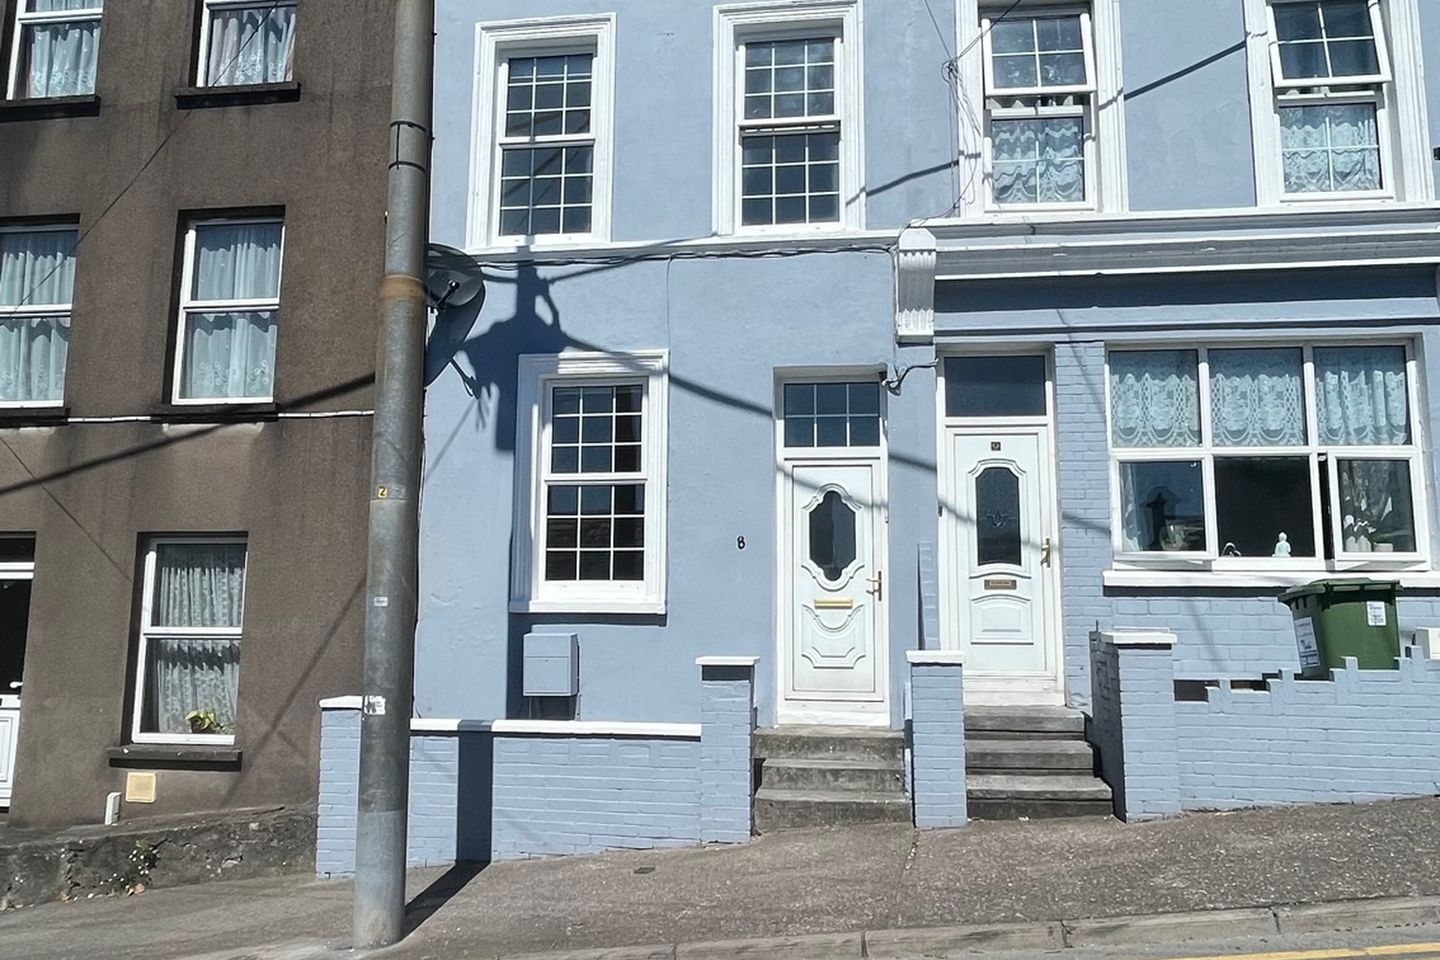 8 Rahilly Street, Cloyne, Co. Cork